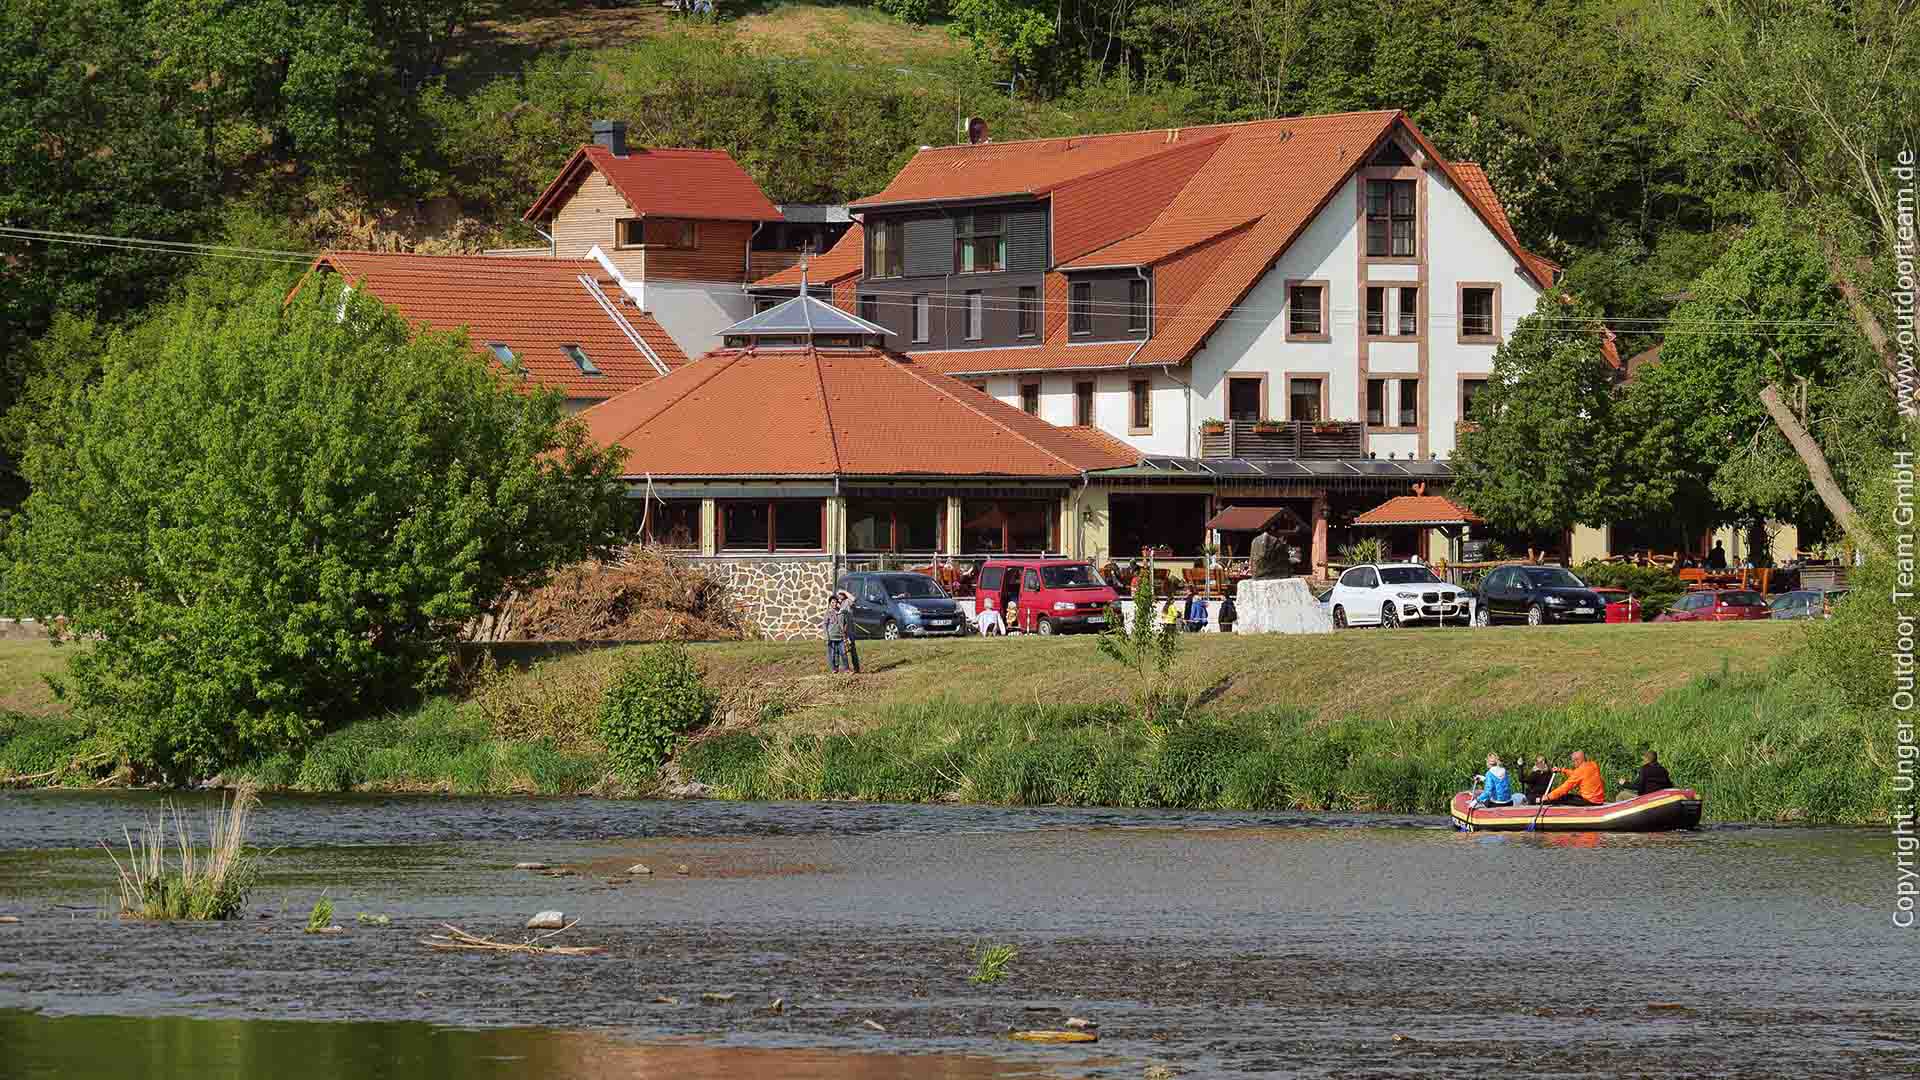 Paddelstrecke D ab Wasserschloss Podelwitz - das große Hotel "Schiffsmühle" mit Gastronomie und Biergarten ist ein beliebter Endpunkt der Paddeltour.